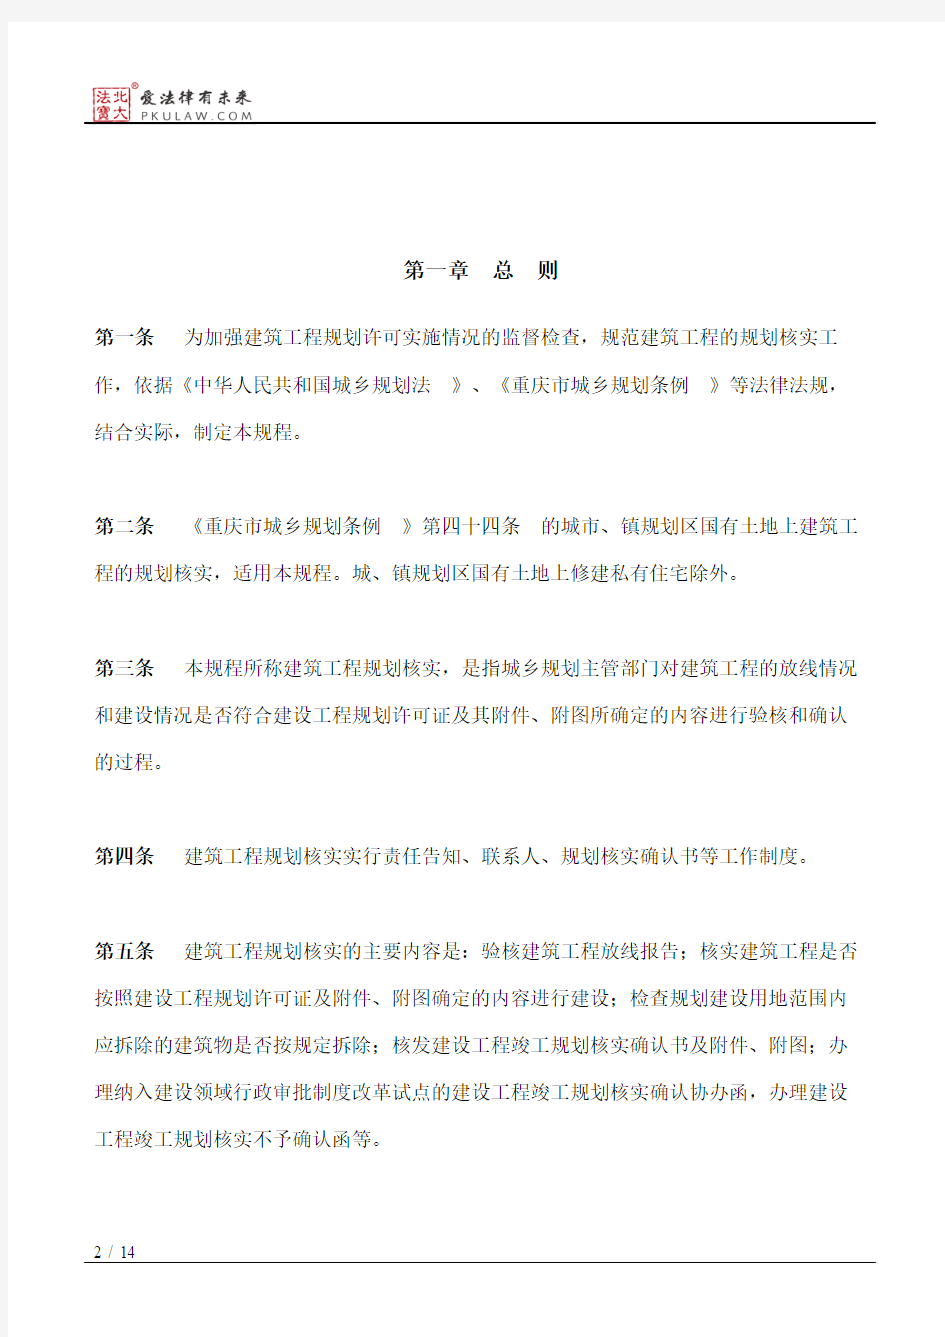 重庆市规划局关于印发《重庆市建筑工程规划核实工作规程》的通知